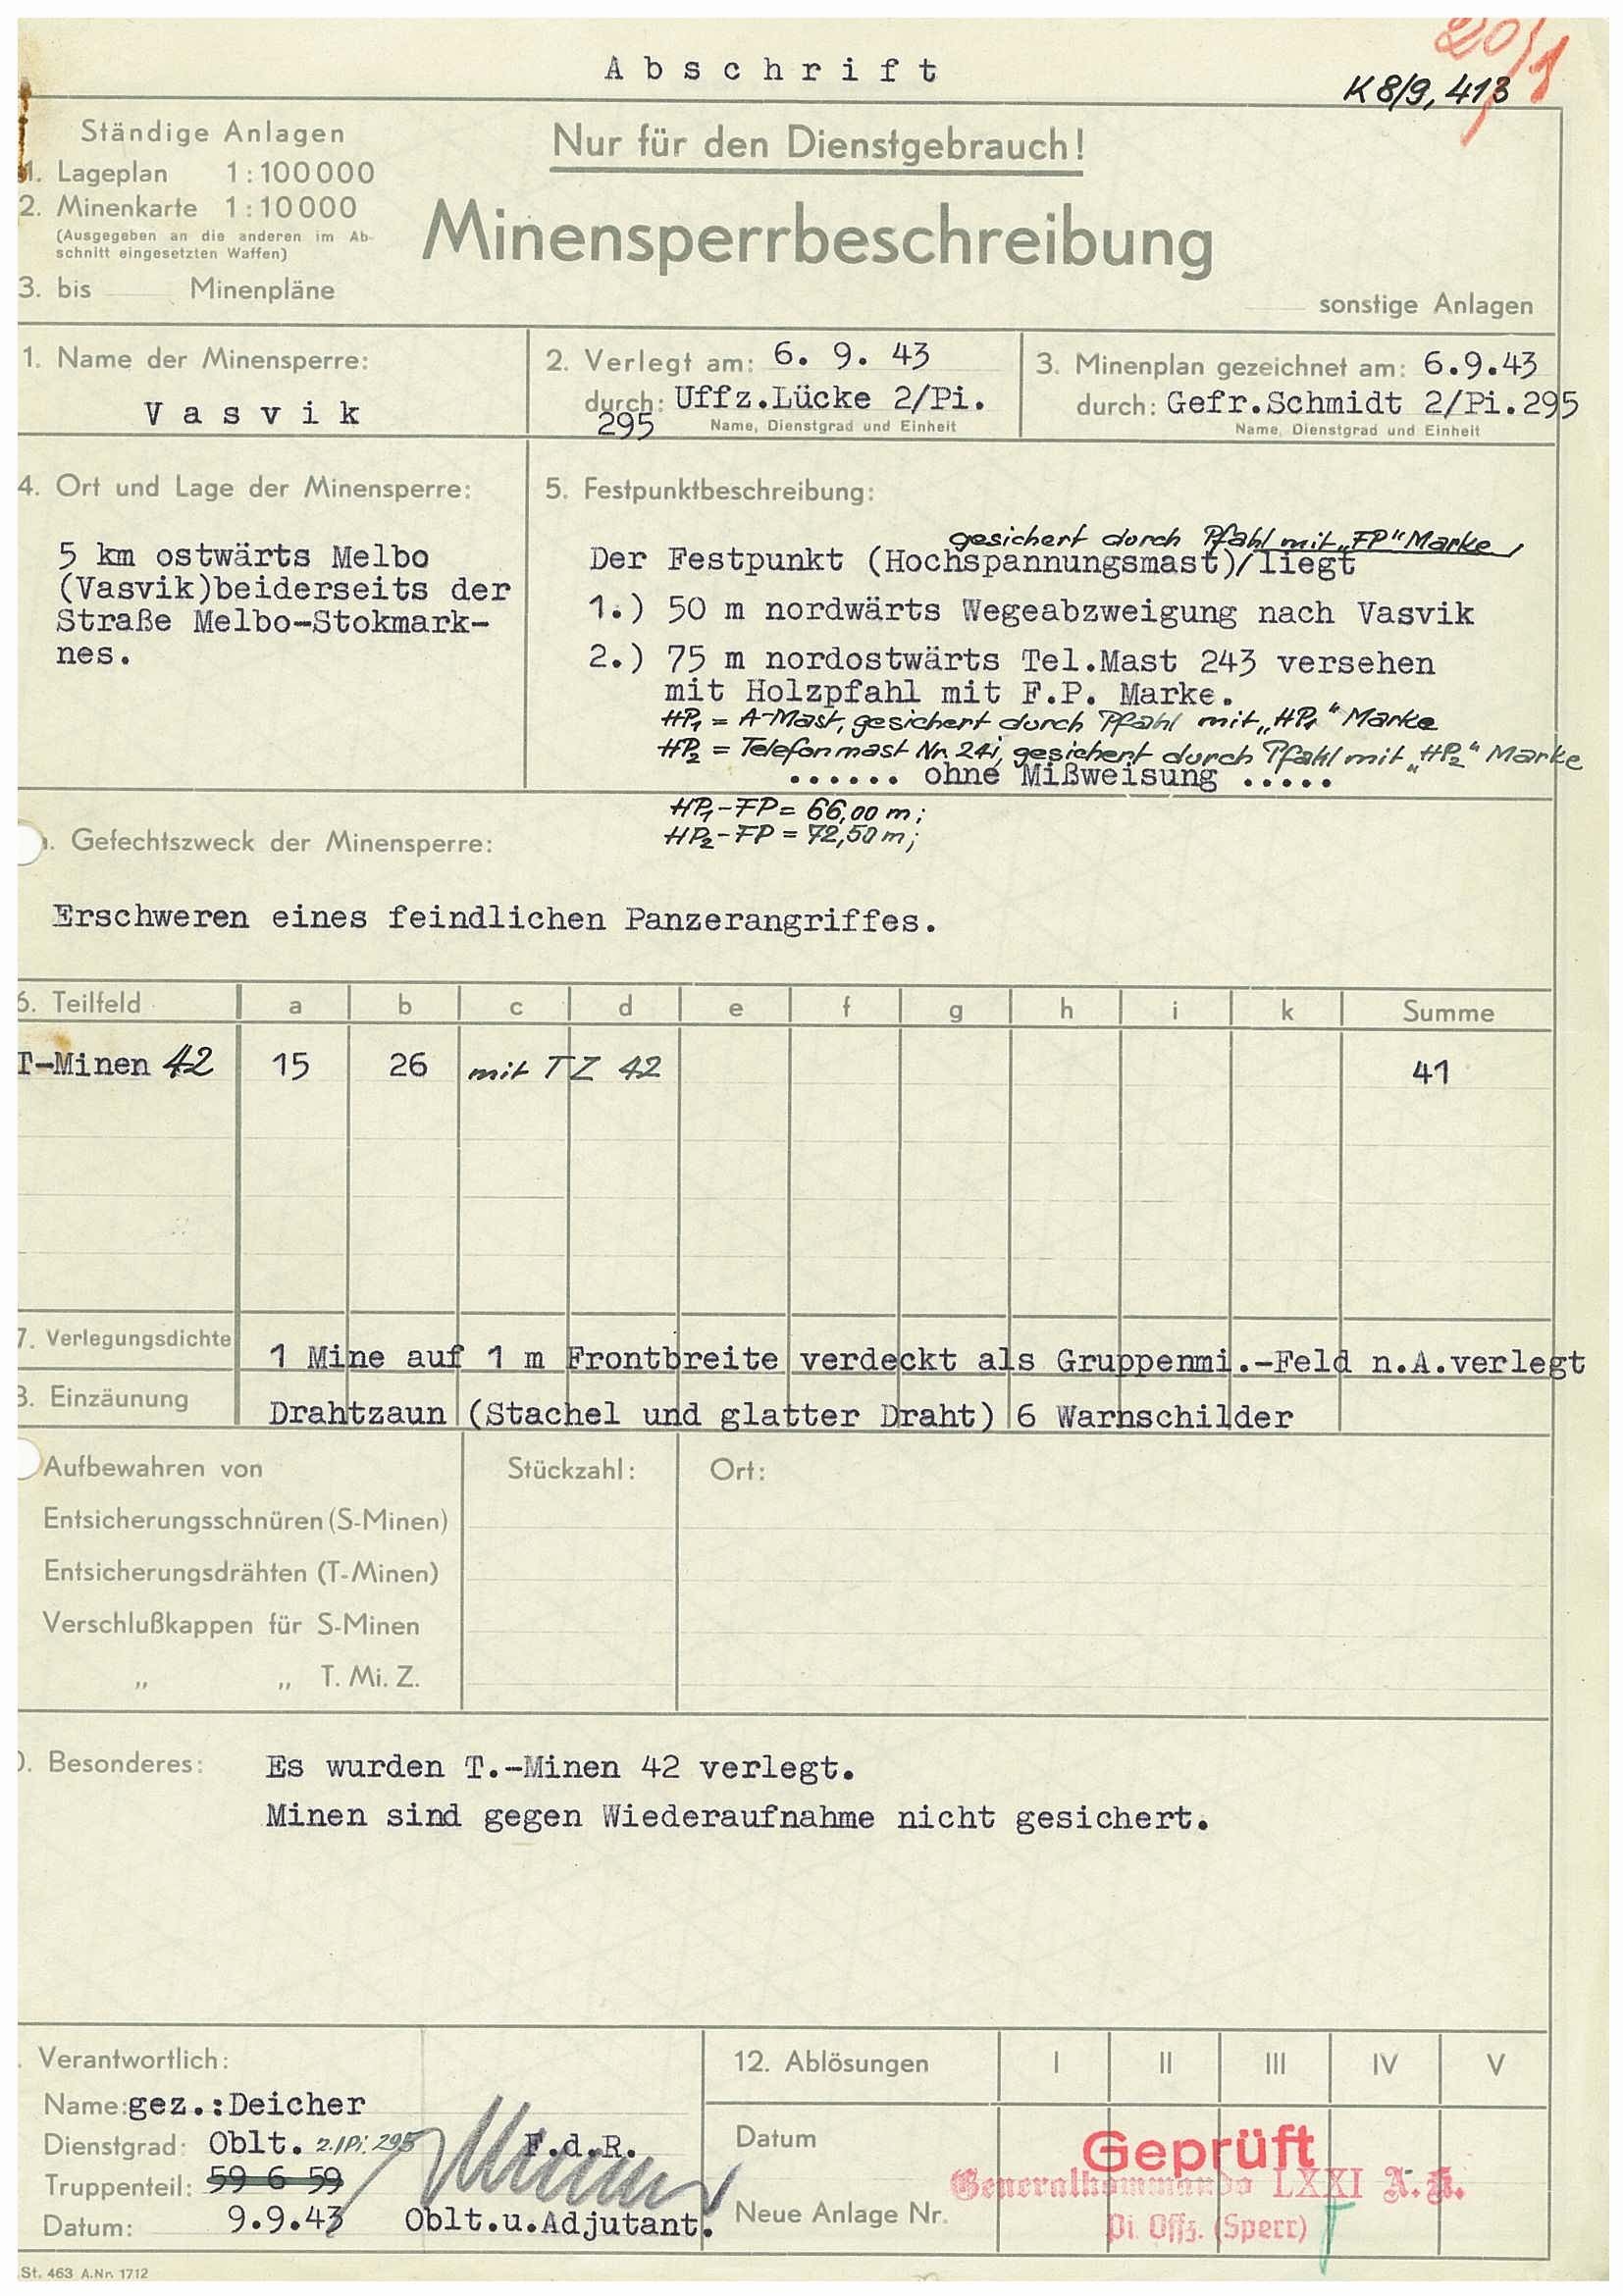 Informasjon om minesperre ved Vasvik i Hadselfjorden. RAFA, Avleveringsliste nr. 1456, DKN/Mineryddingsarkiv